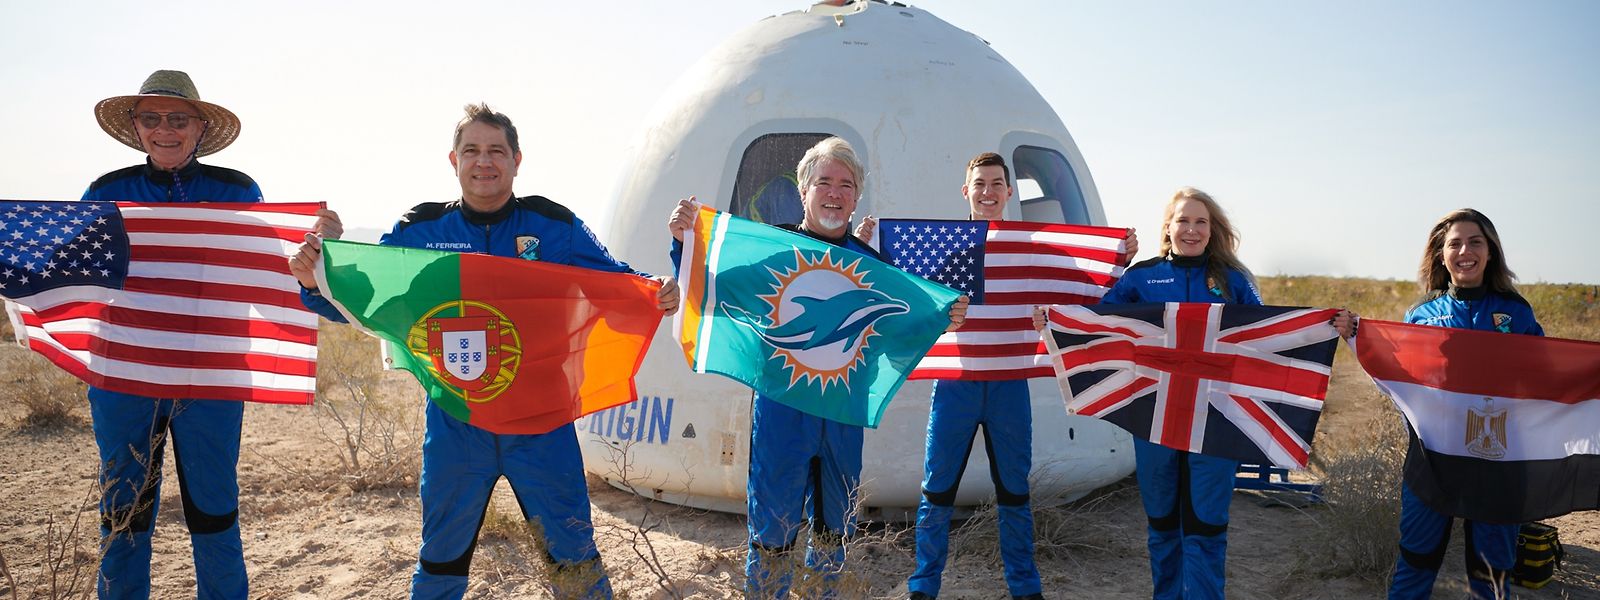 Mário Ferreira e os outros cinco turistas espaciais logo depois do regresso à Terra, após a viagem ao espaço de quinta-feira.